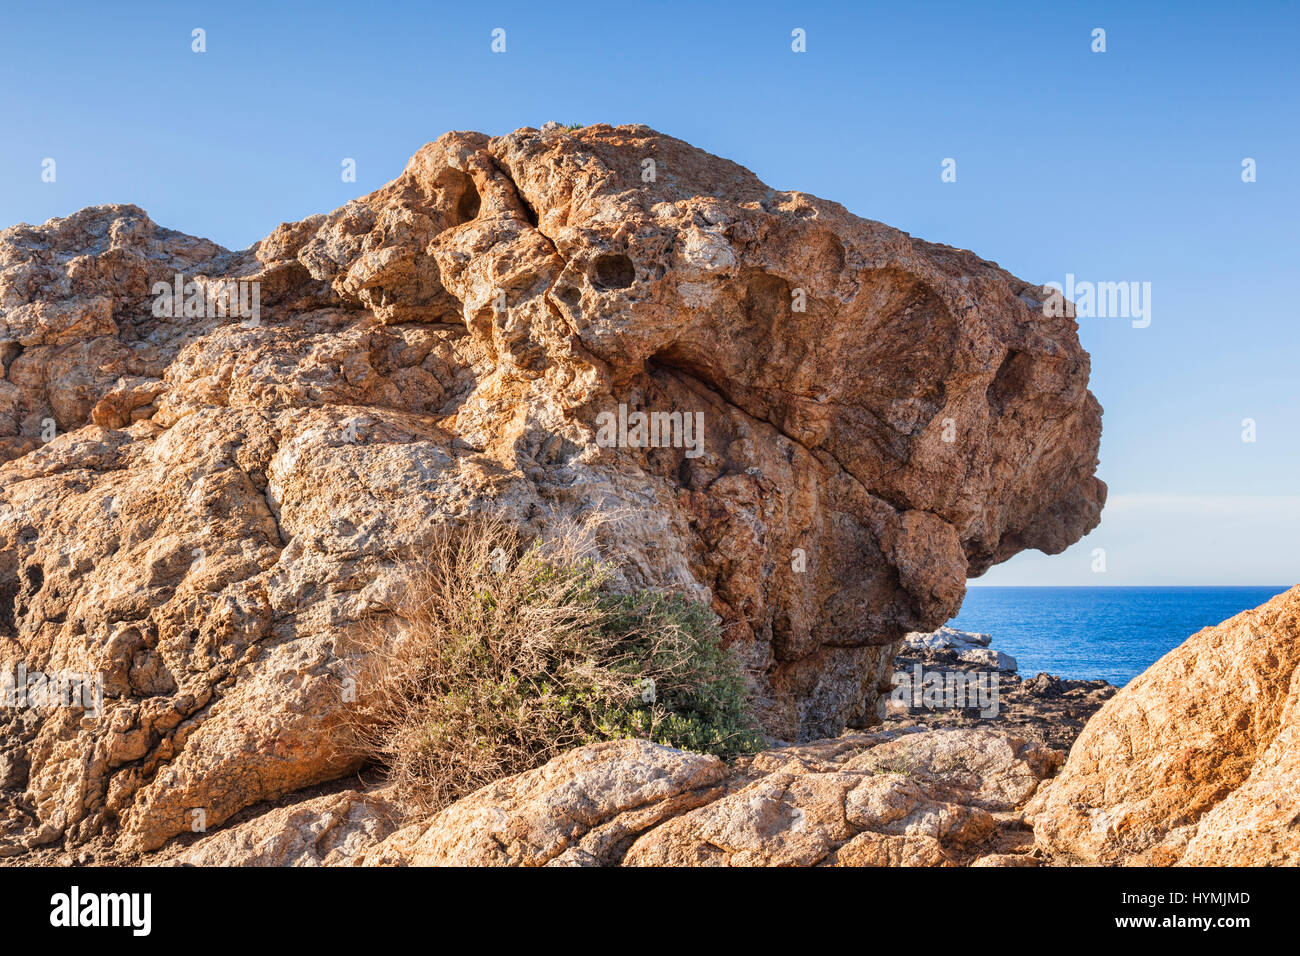 Ispirazione per Salvador Dali, una delle strane formazioni rocciose a Cap de Creus, Catalogna, Spagna. Foto Stock